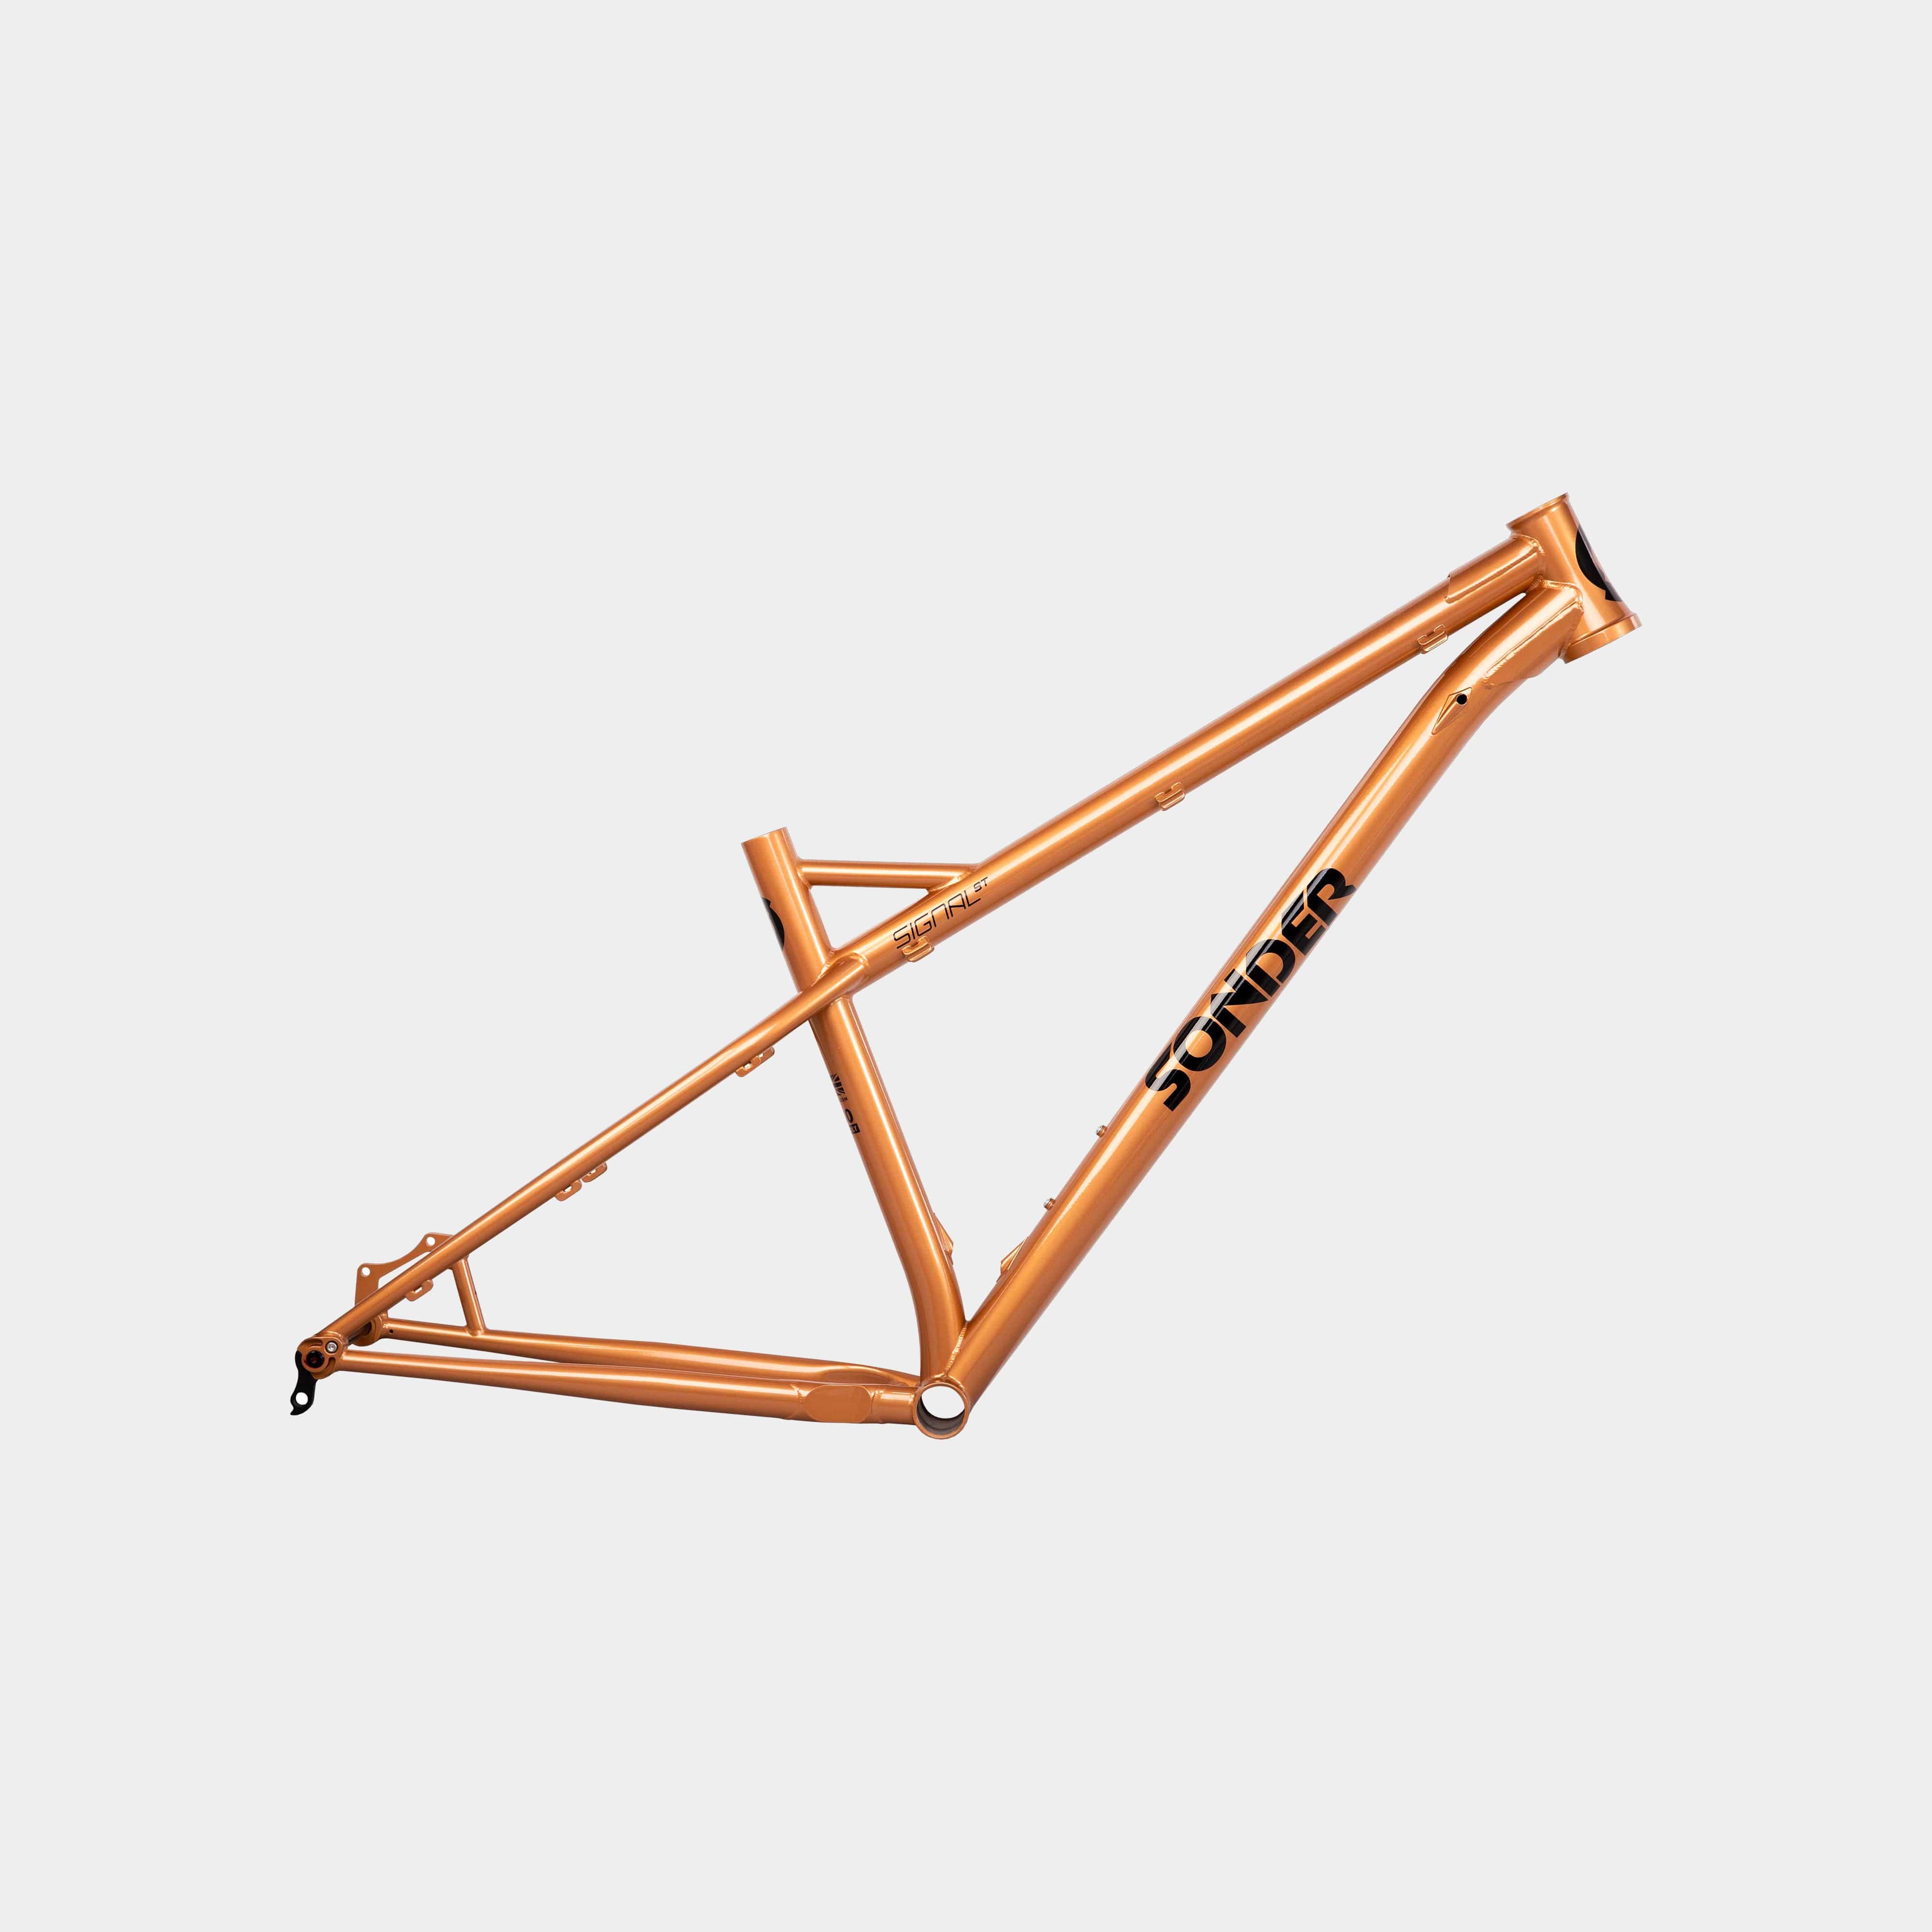 V2 NVHT Trail Enduro Chromoly Steel Hardtail Mountain Bike Frame